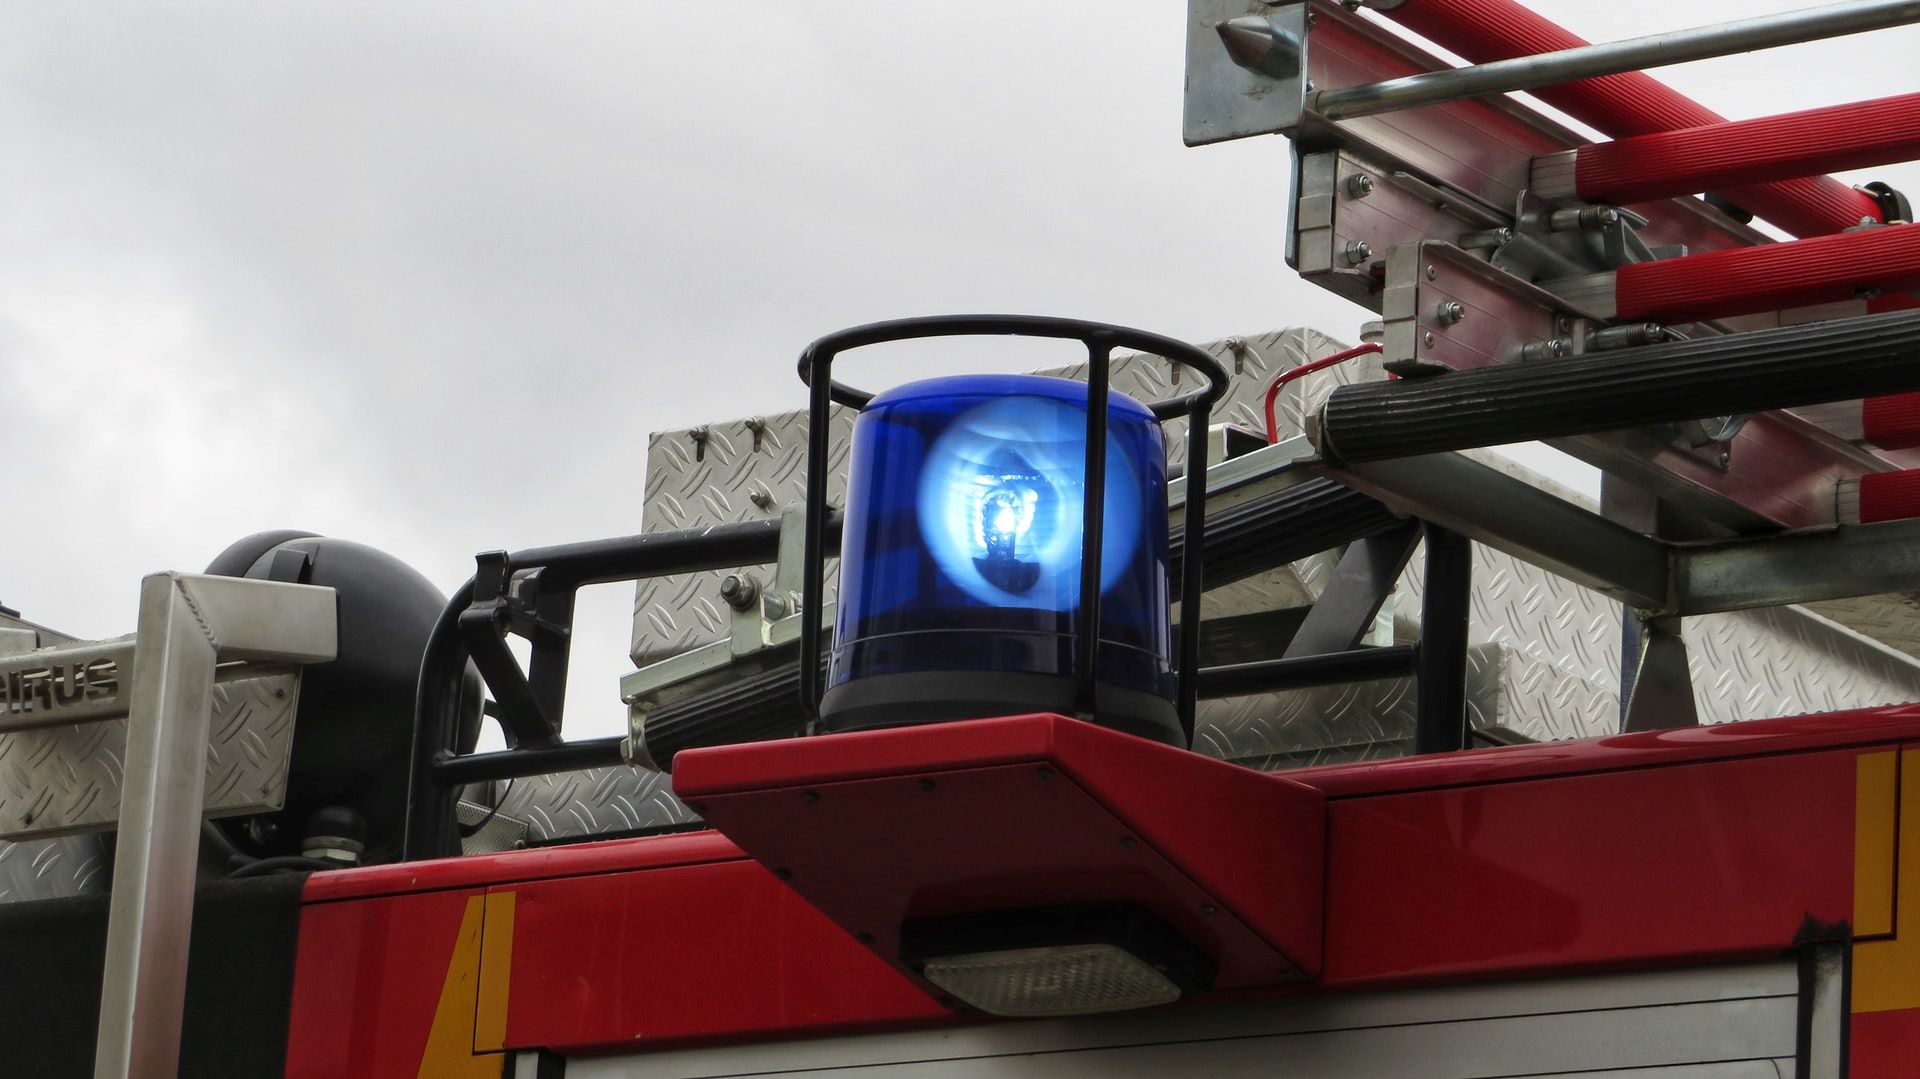 Das Bild zeigt ein Feuerwehrfahrzeug, auf dem eine blaue Rundumleuchte montiert ist. Die Leuchte befindet sich auf einem roten Aufbau des Fahrzeugs, umgeben von metallischen Komponenten und Ausrüstungen, die typisch für Feuerwehrfahrzeuge sind. Die blaue Leuchte ist eingeschaltet und signalisiert die Präsenz und Einsatzbereitschaft des Fahrzeugs im Notfall. Die Anordnung und Ausstattung des Fahrzeugs deutet auf seine spezielle Nutzung im Rettungs- und Brandbekämpfungseinsatz hin.